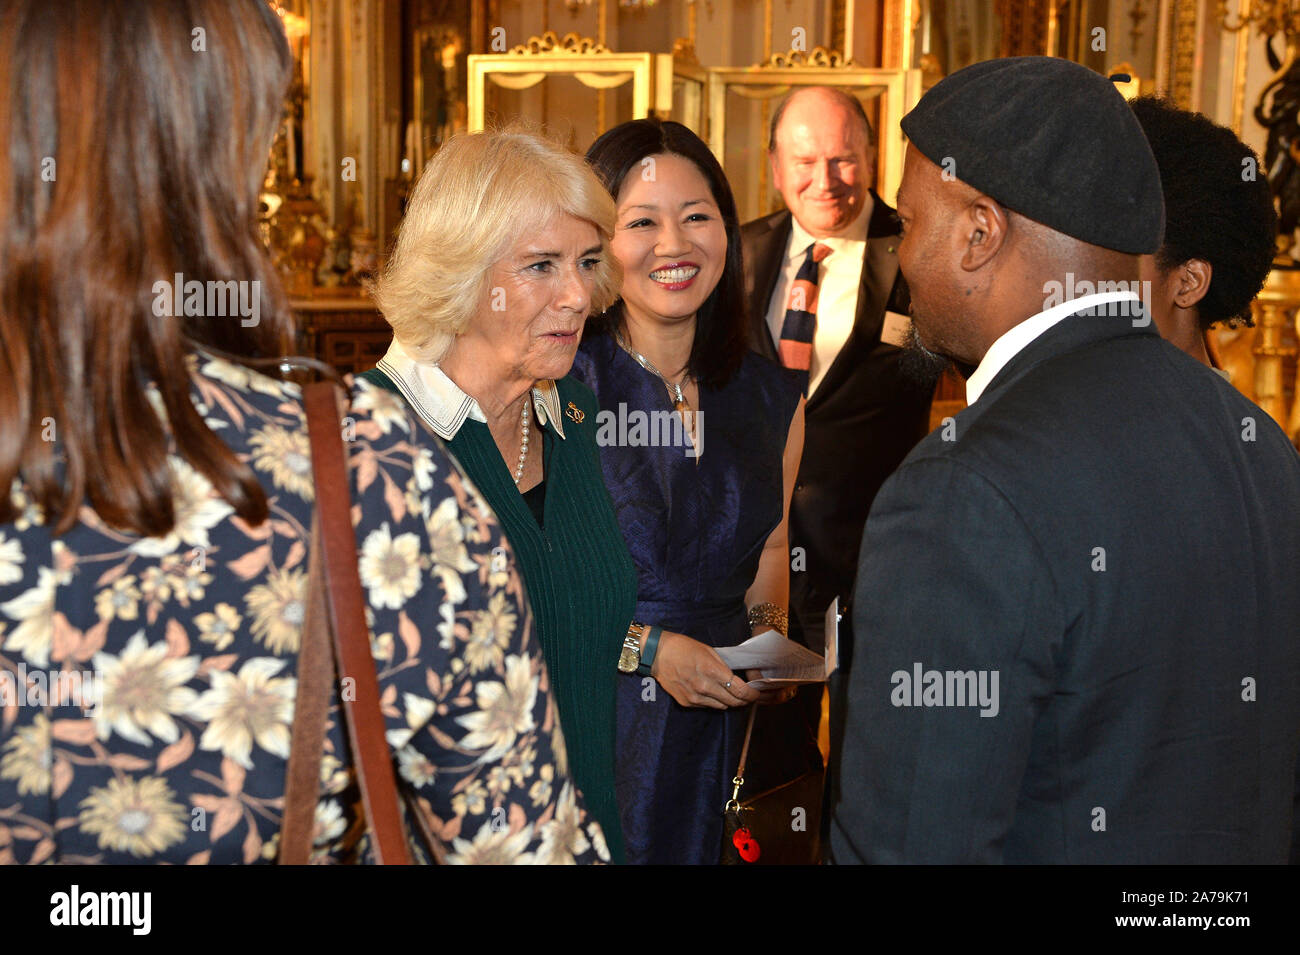 La duchesse de Cornouailles rencontre poète Ben Okri, lors d'une réception pour les gagnants du concours de rédaction du Commonwealth de la reine au palais de Buckingham à Londres. Banque D'Images